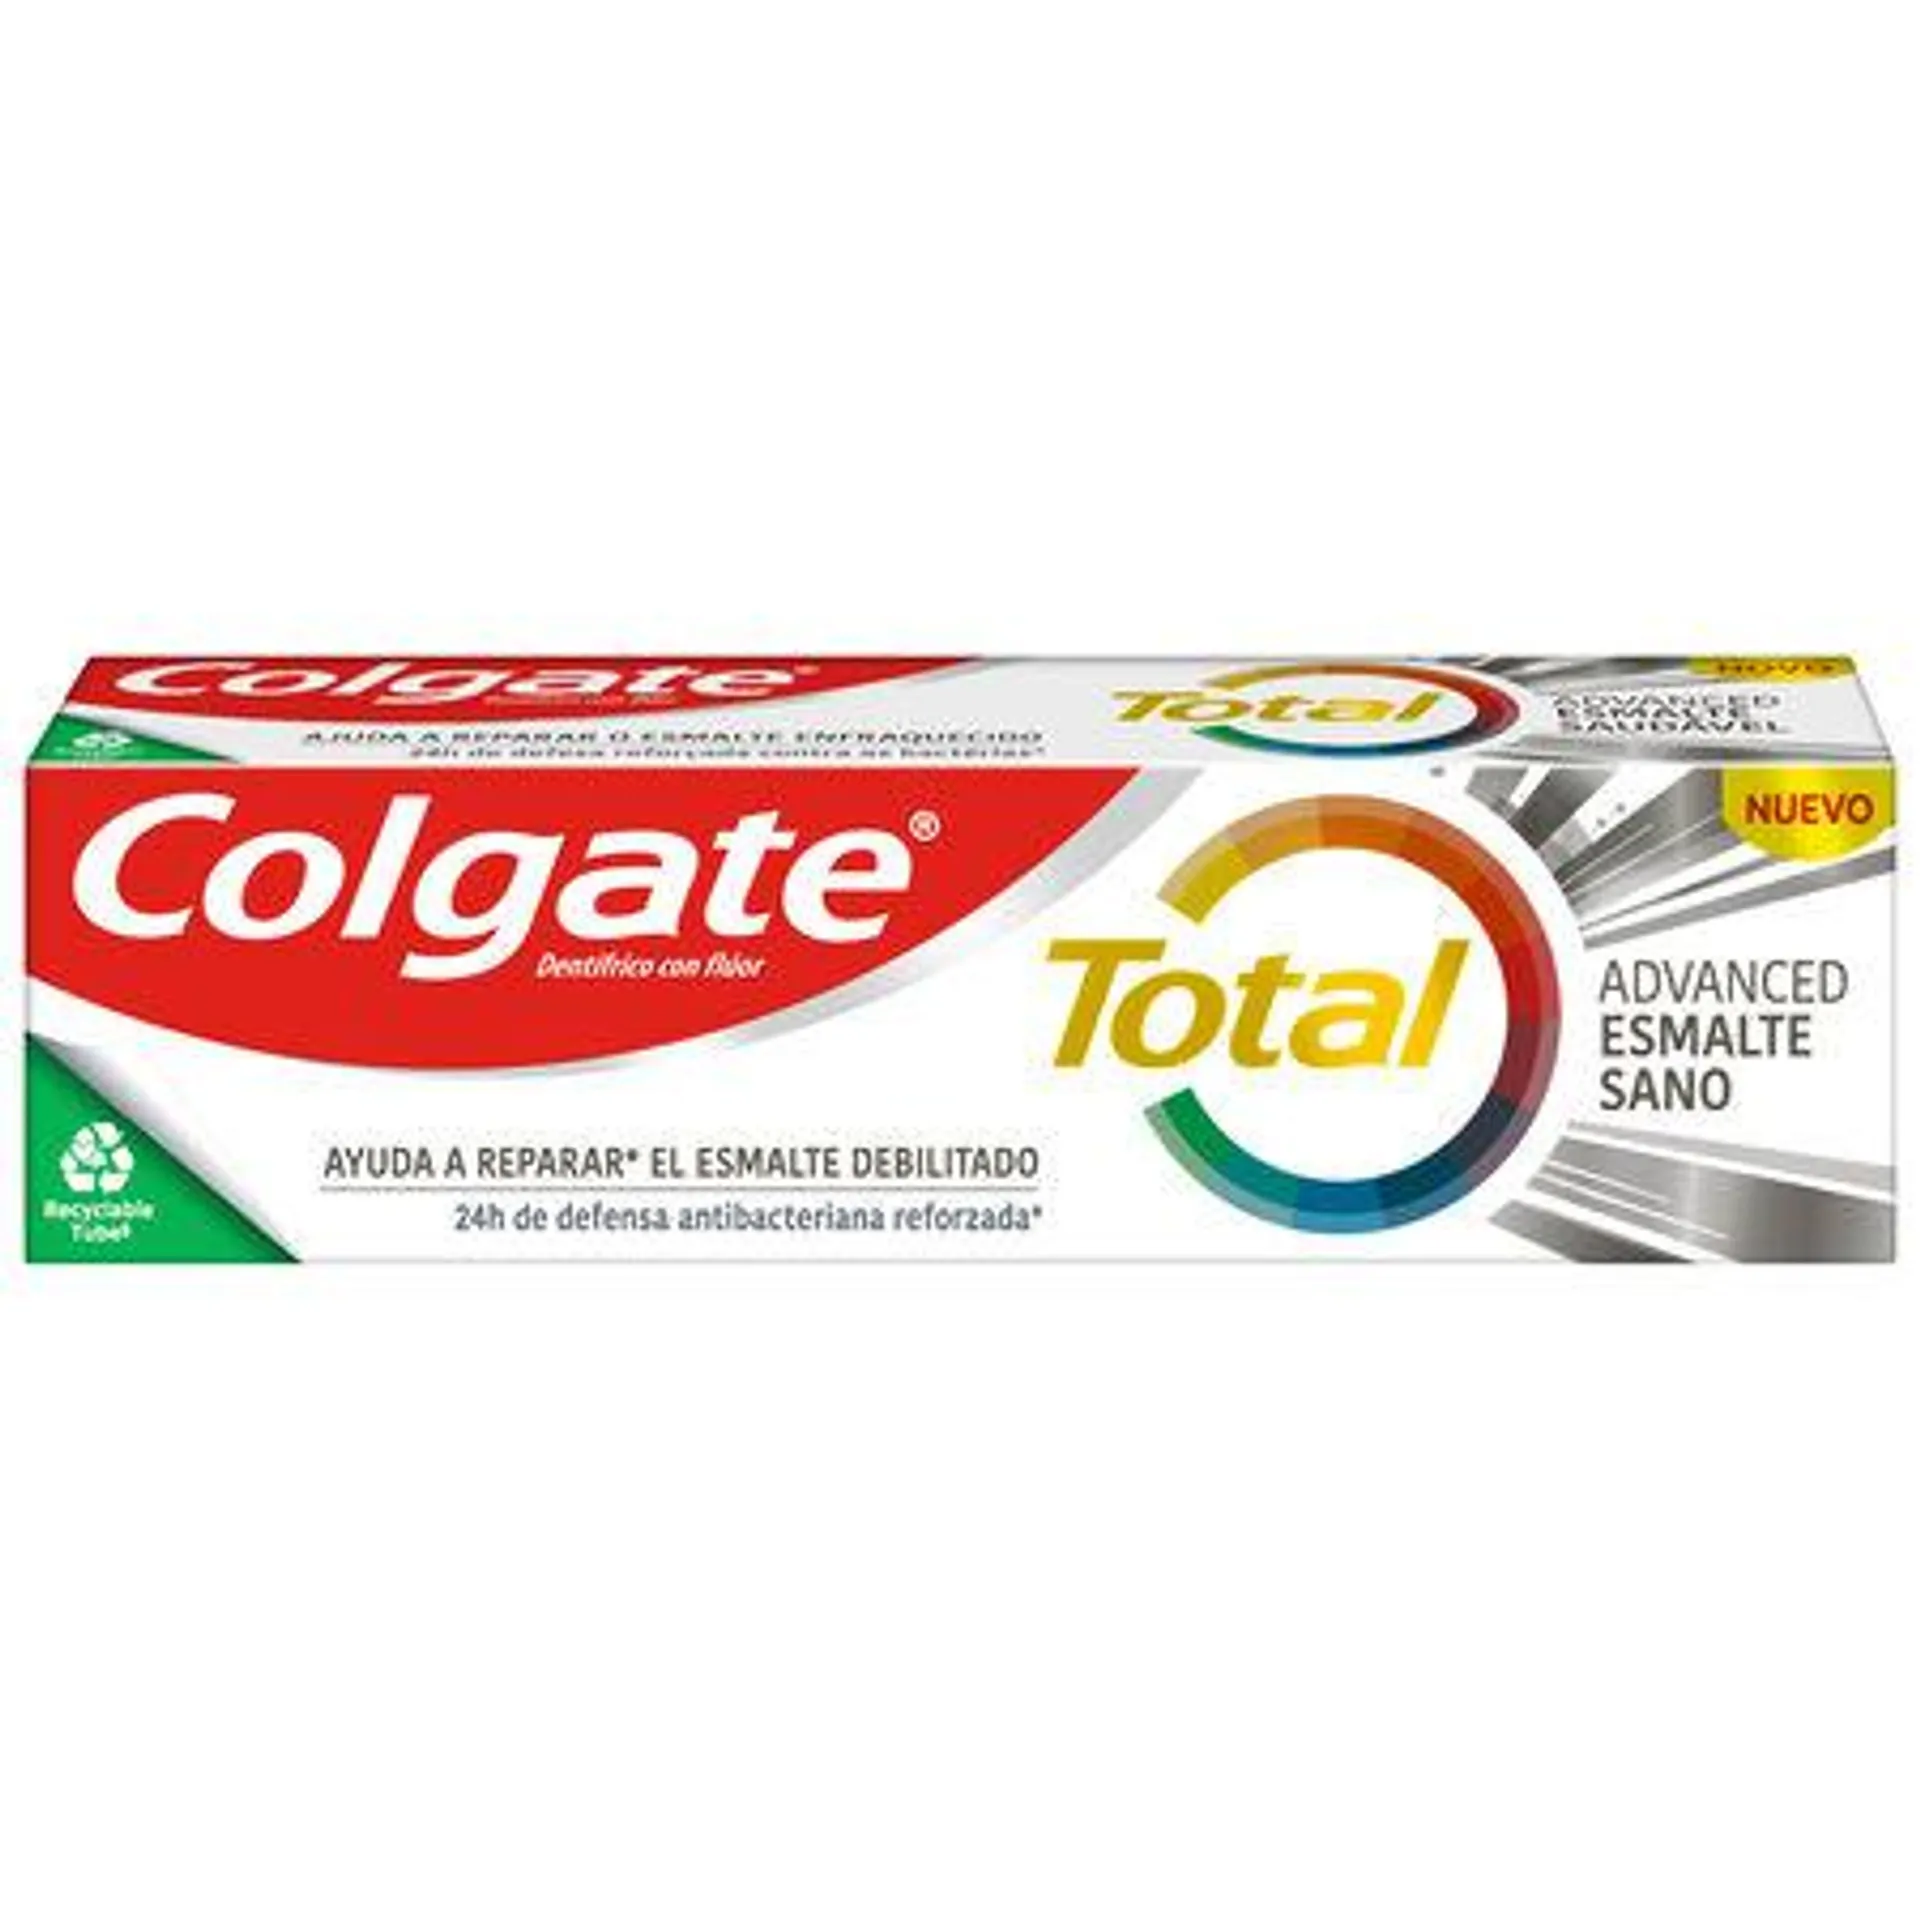 Pasta de dientes Colgate Total Advanced Esmalte Sano 24h de protección completa 75ml